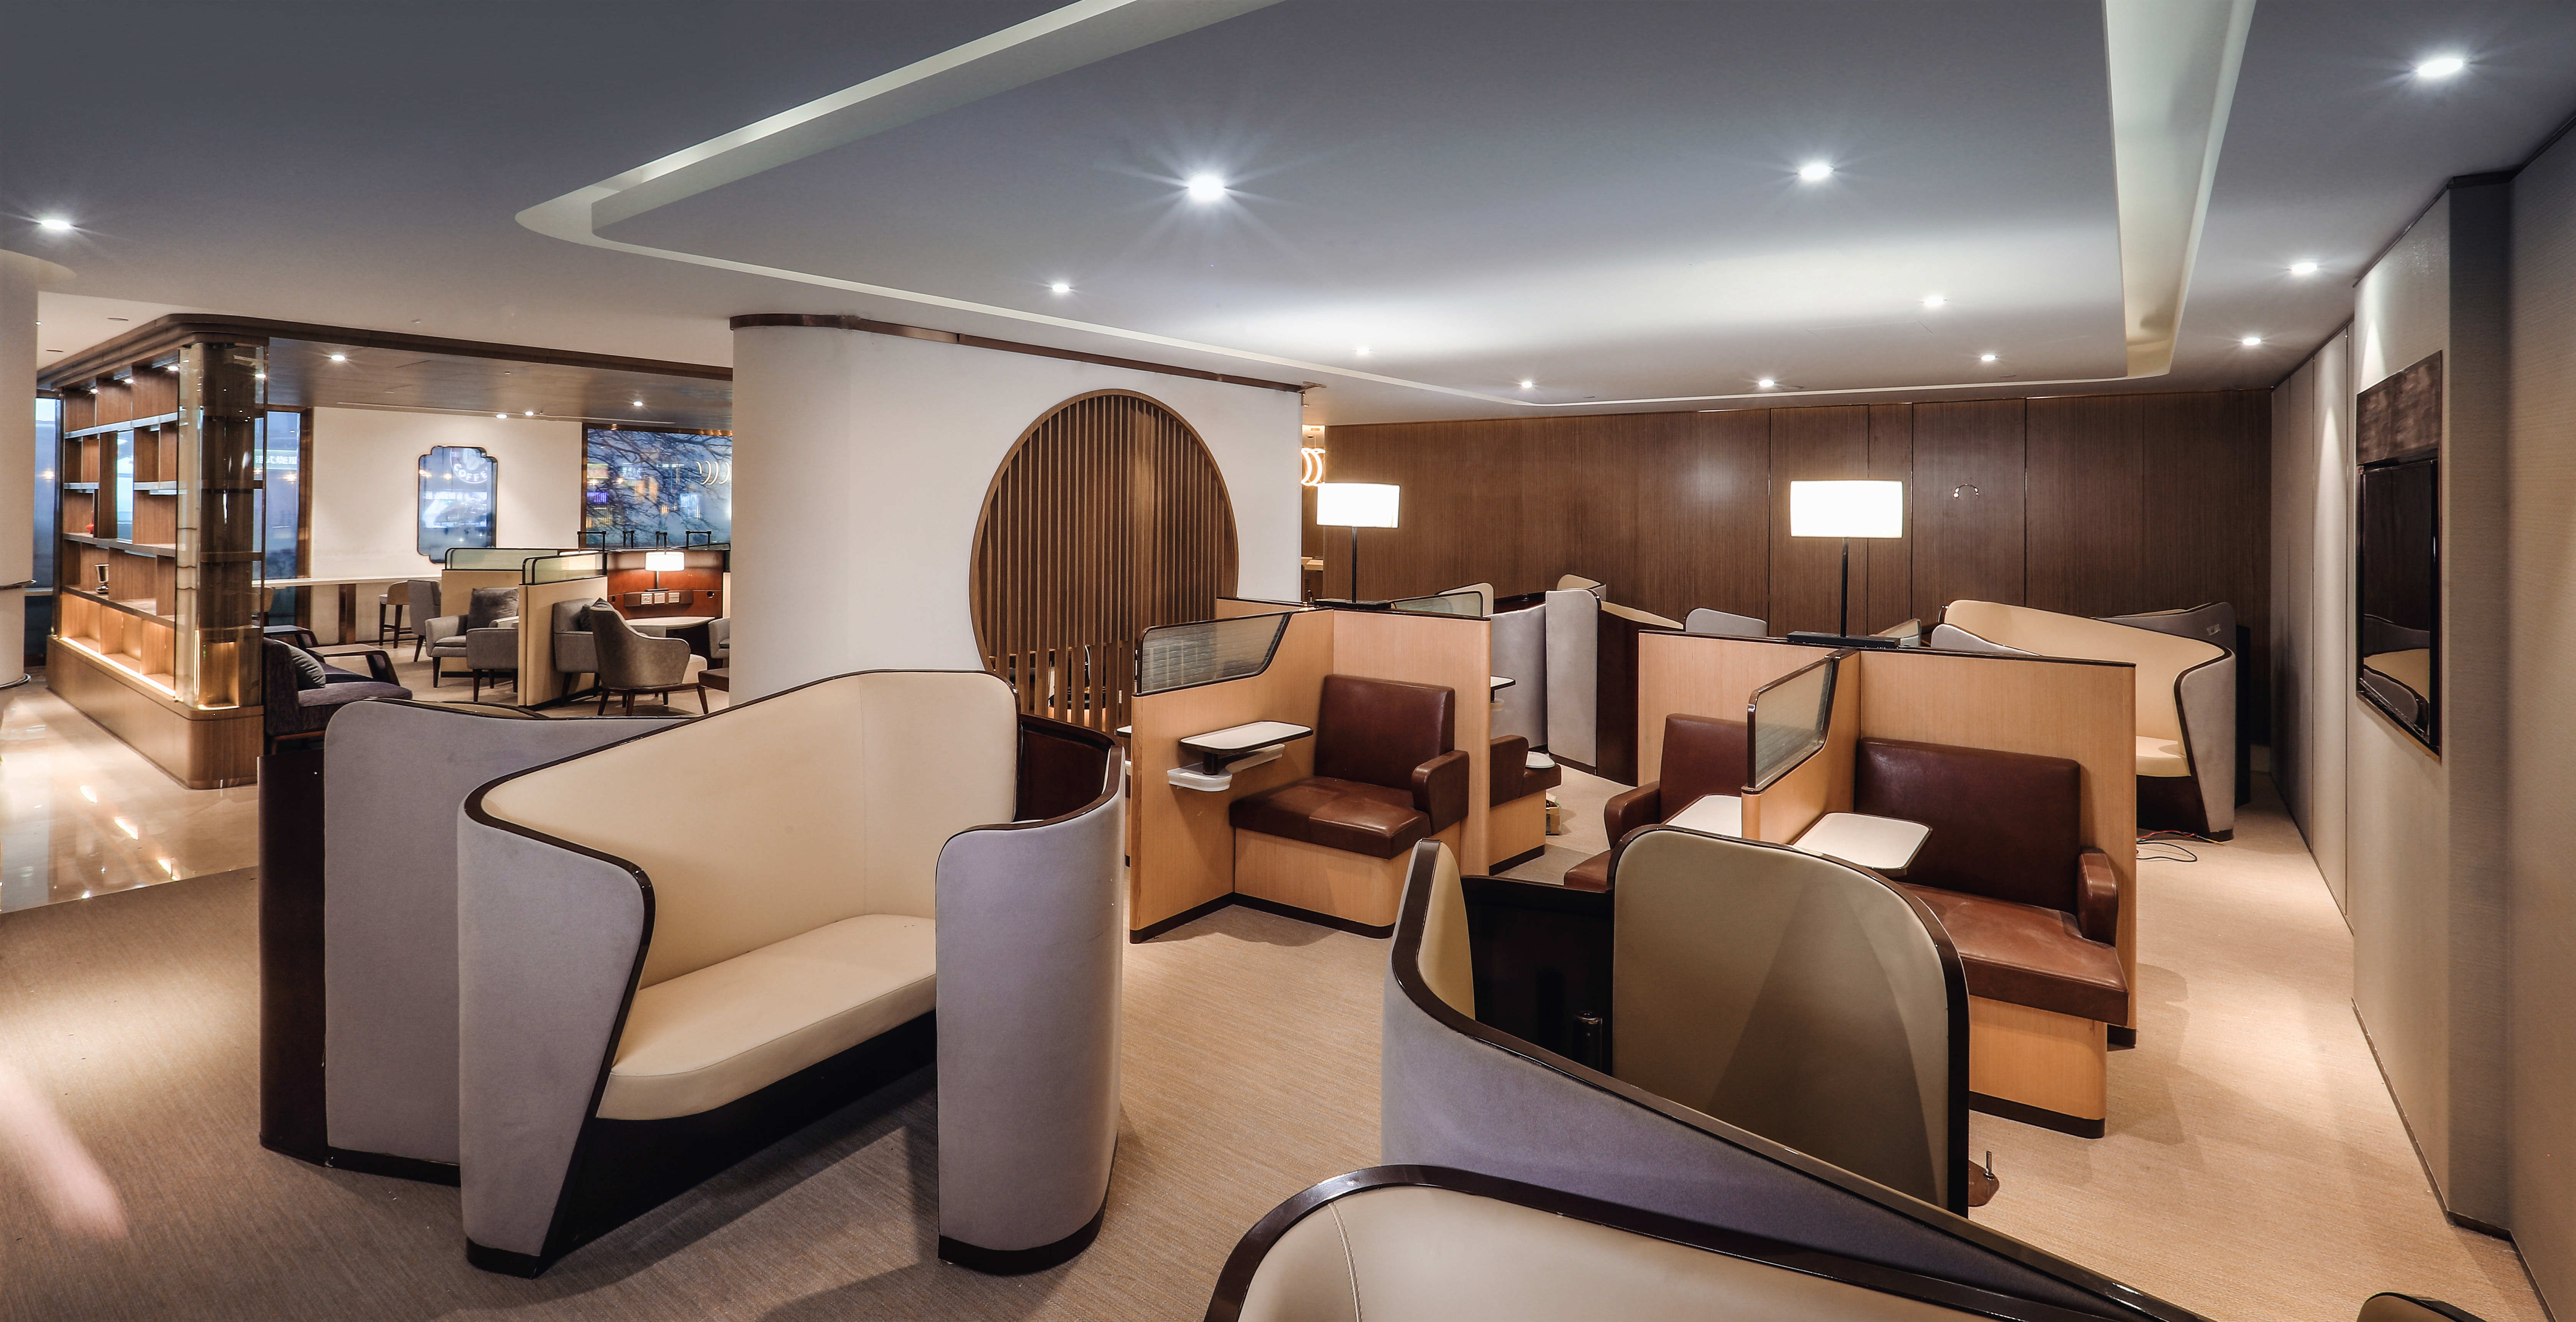 海南航空贵宾室荣获2021年度品质休息室荣誉